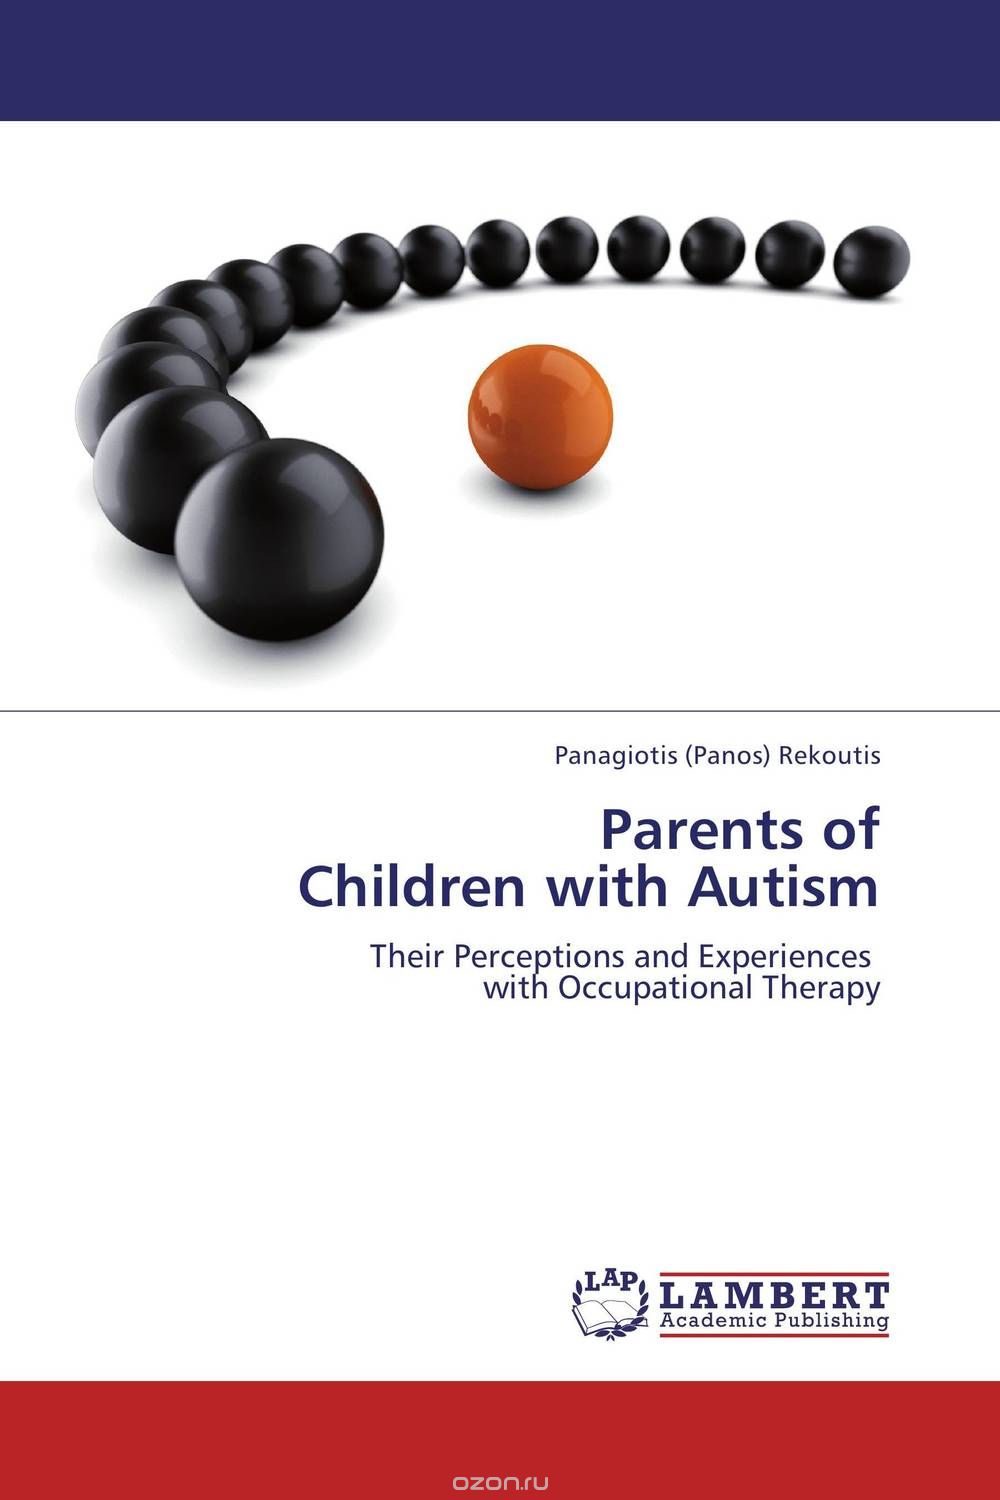 Скачать книгу "Parents of  Children with Autism"